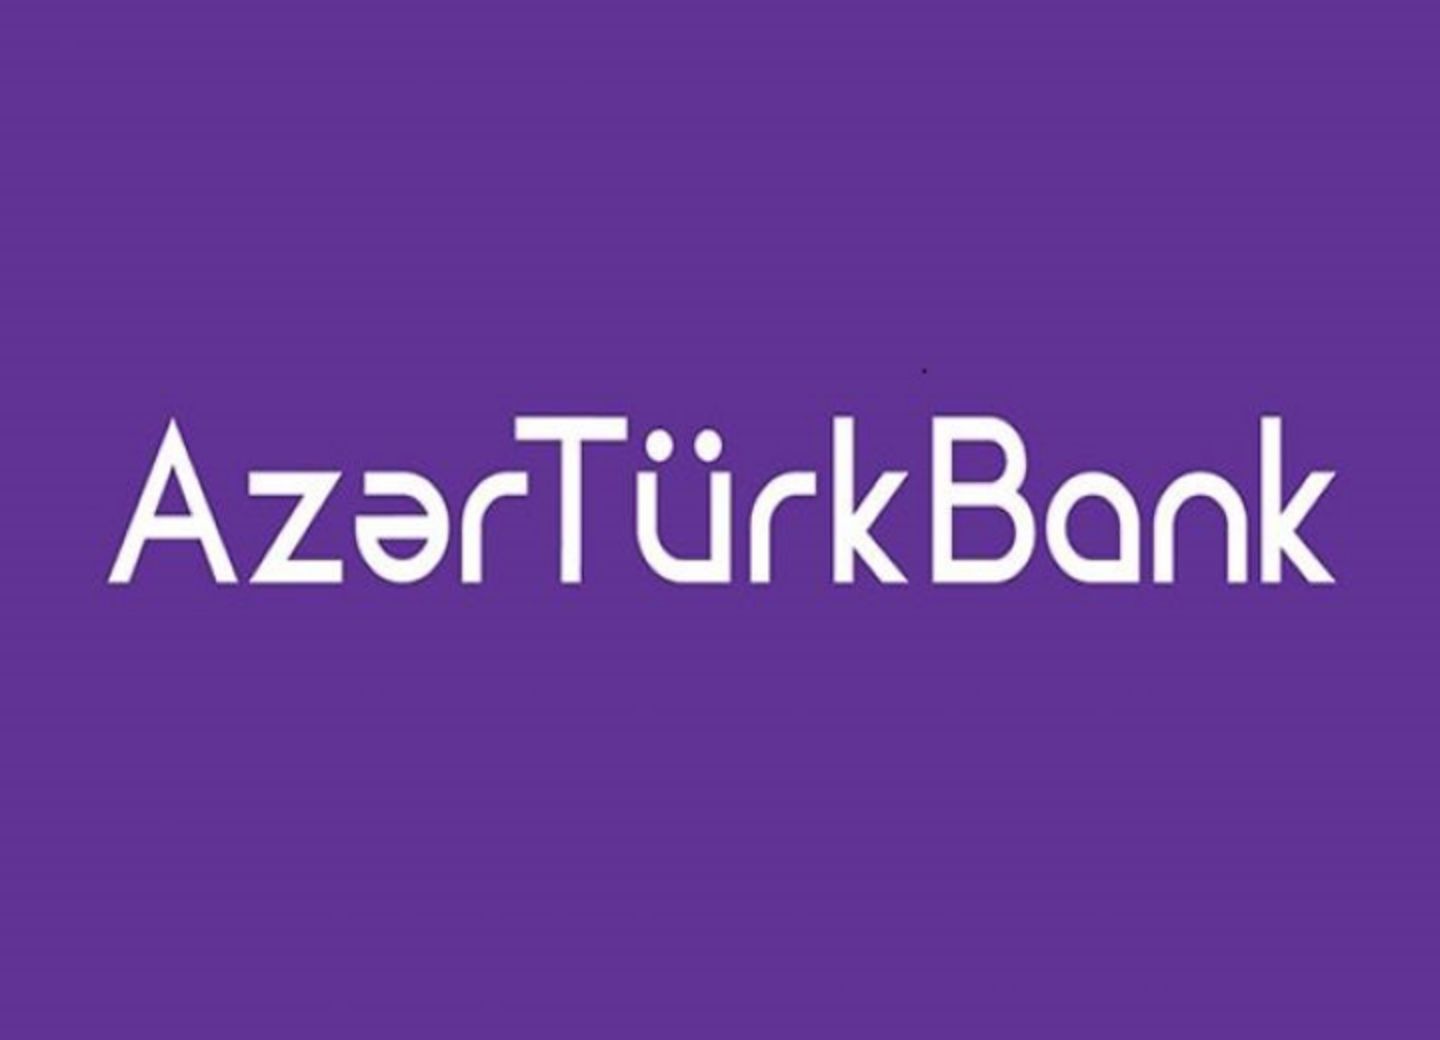 Выгодная кредитная карта для индивидуальных предпринимателей от Azer Turk Bank 